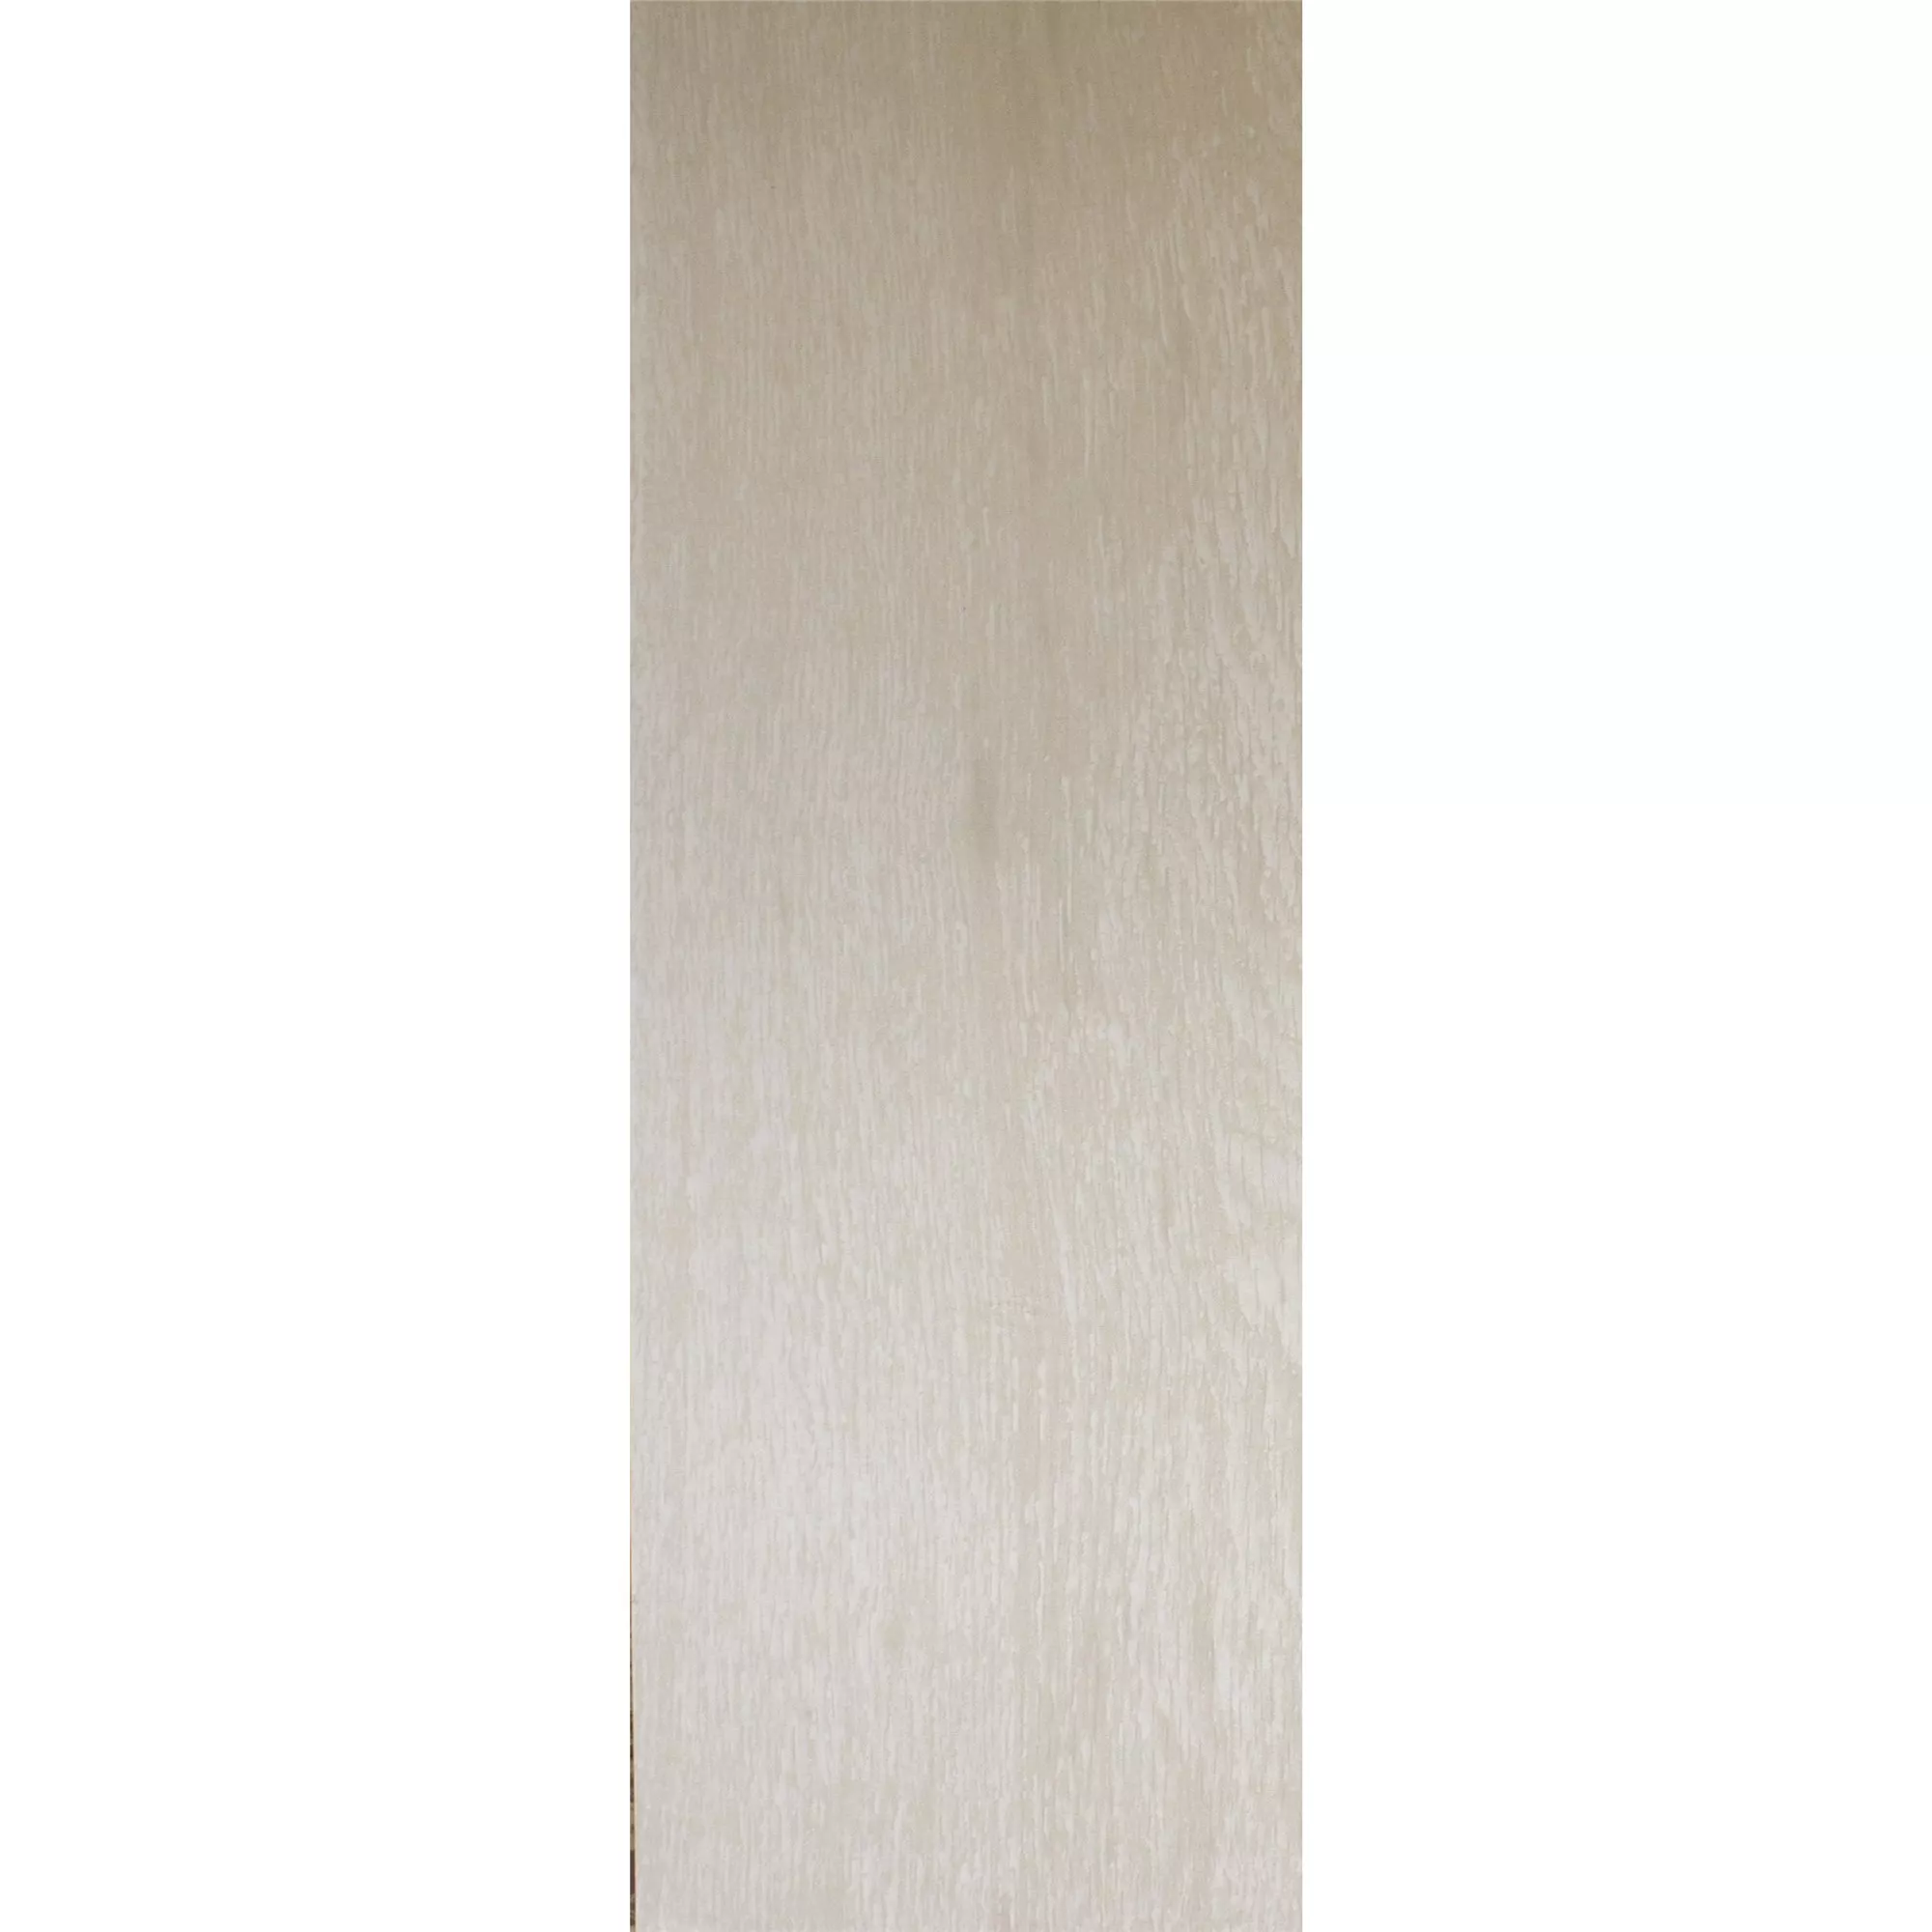 Vloertegels Herakles Houtlook White 20x120cm